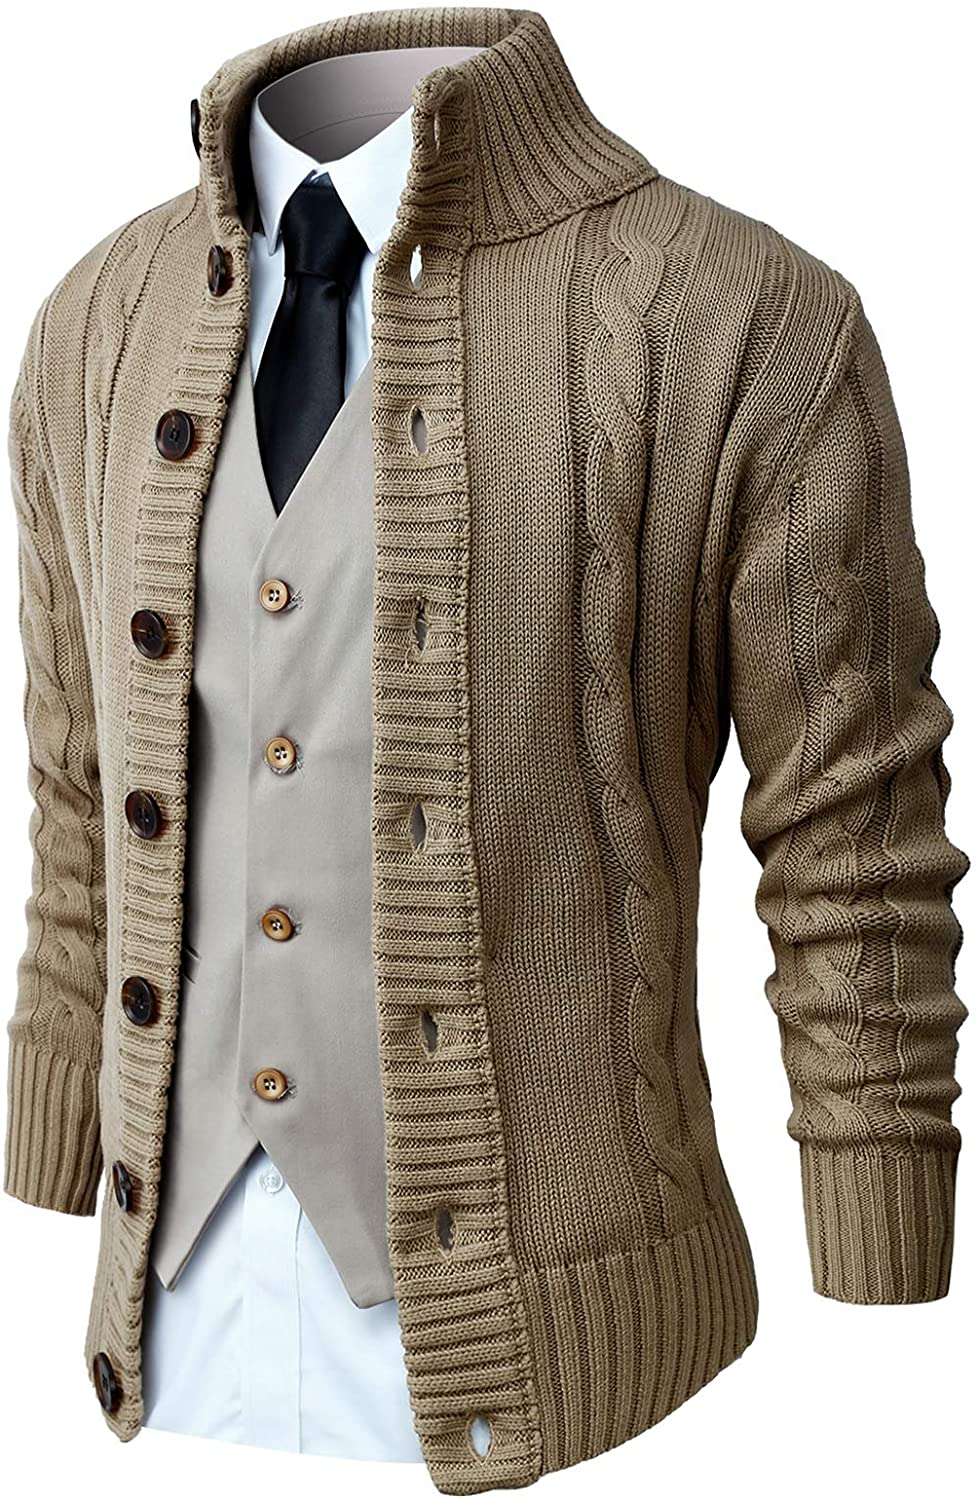 Yayun Yayu Mens Fashion Turn-Down Collar Long Sleeve Knit Sweater Cardigan